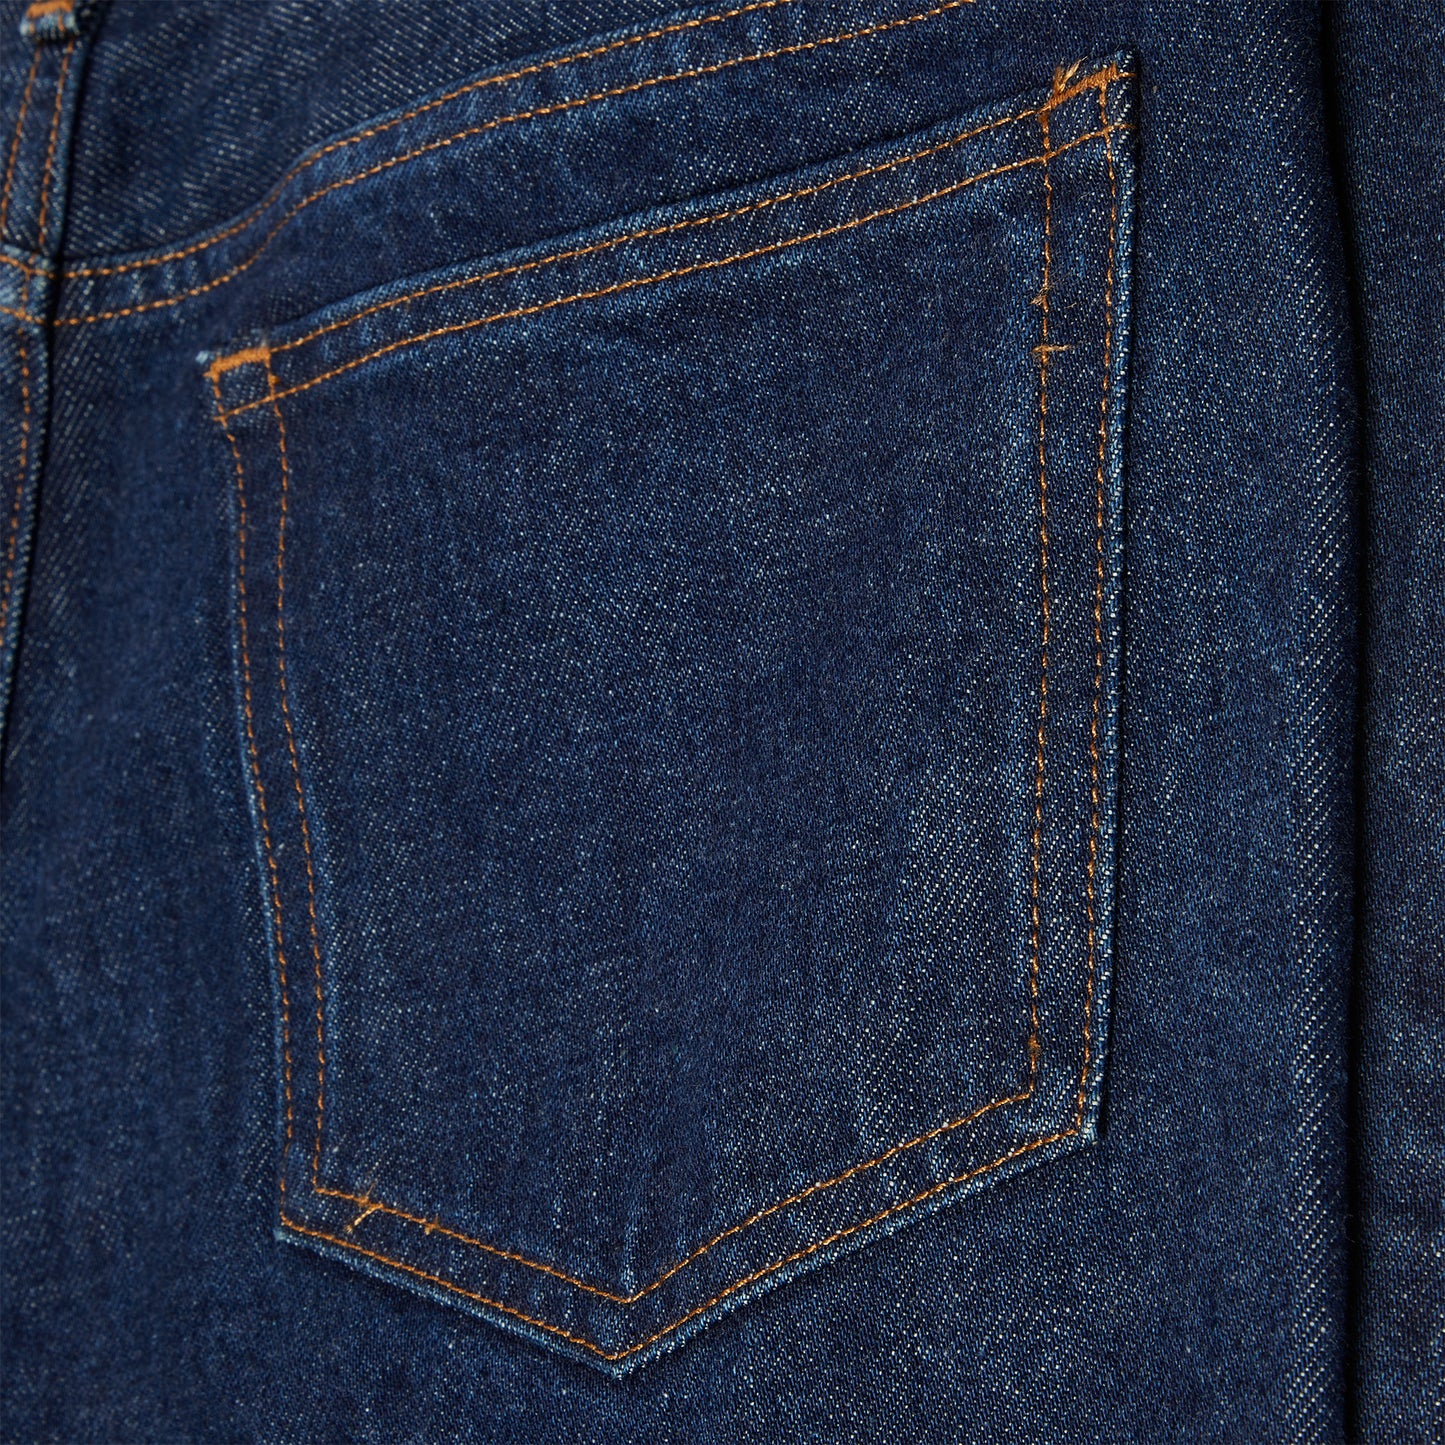 A.P.C. Petit New Standard Jeans (Blue)